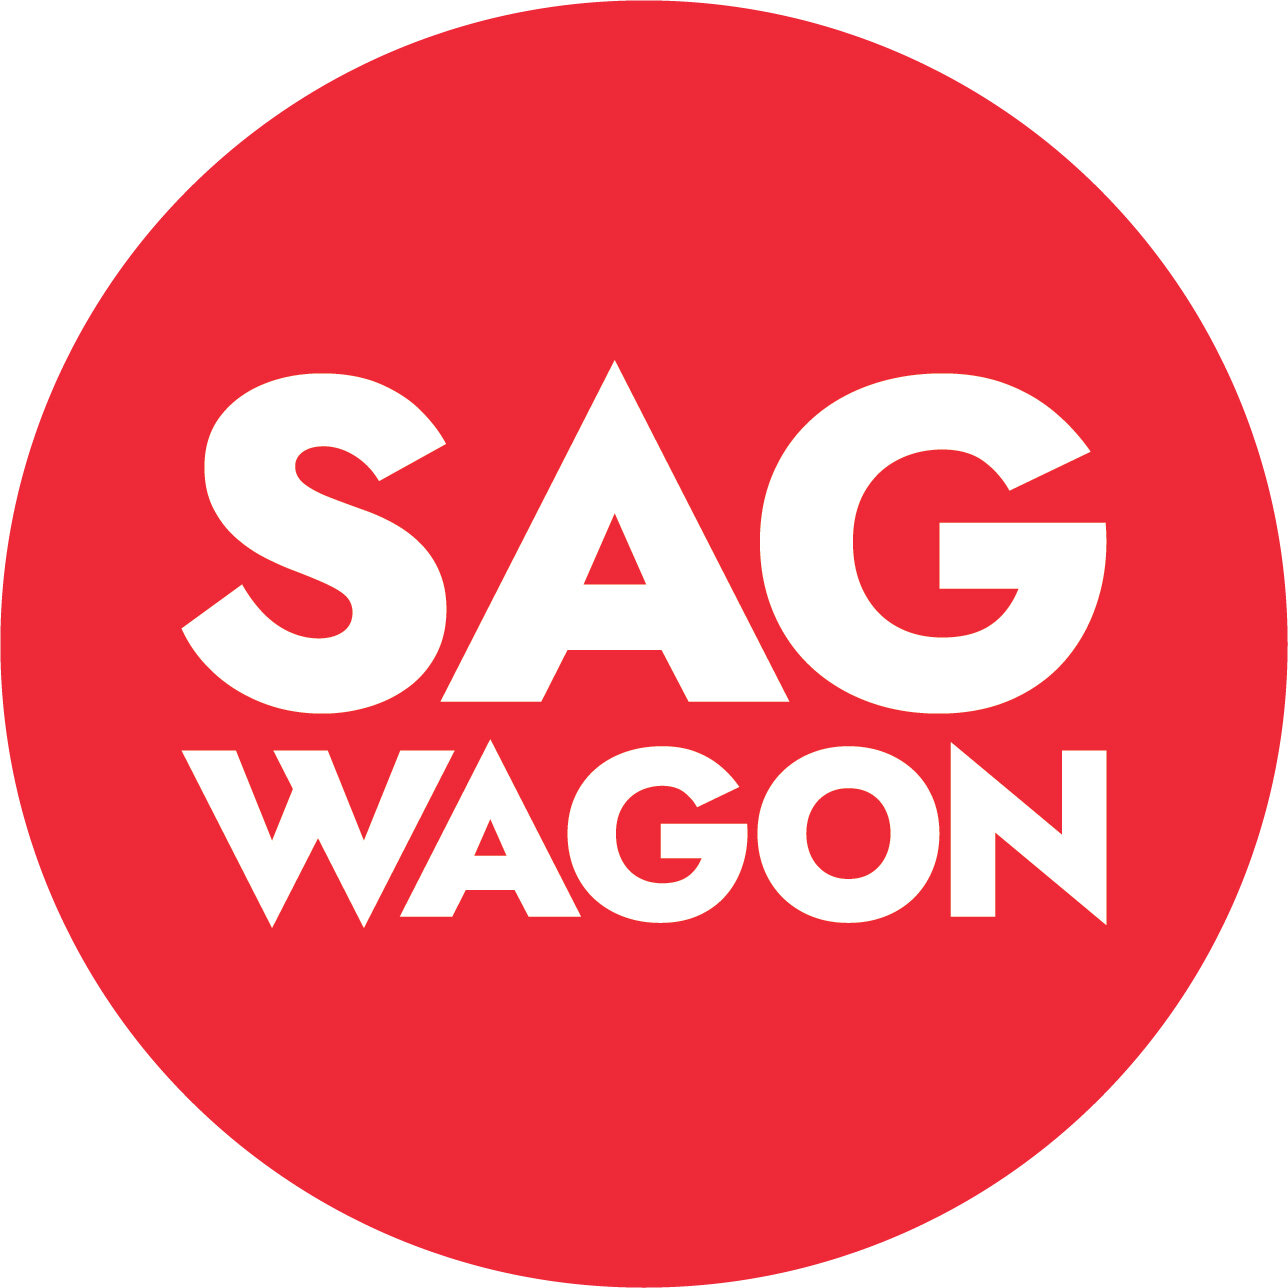 The Sag Wagon